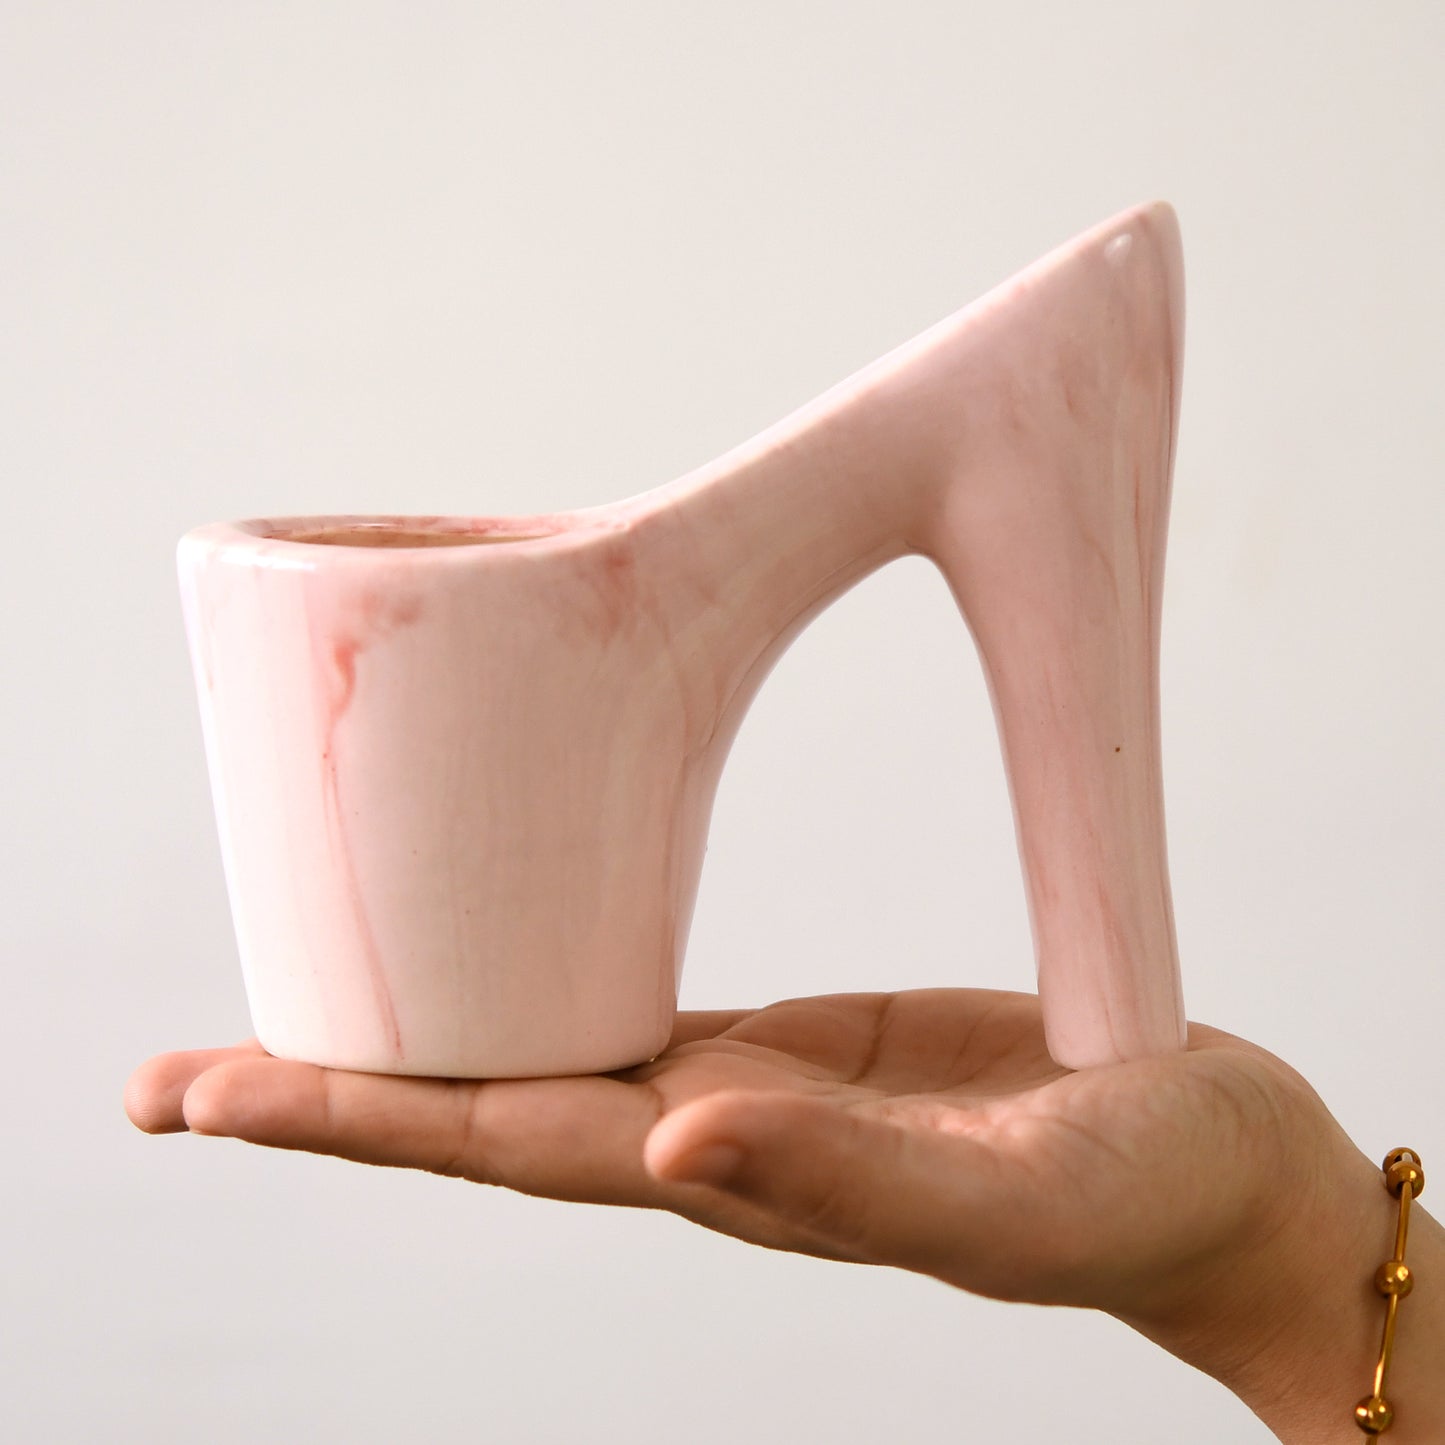 Pink Princess Sandal Plant Pot